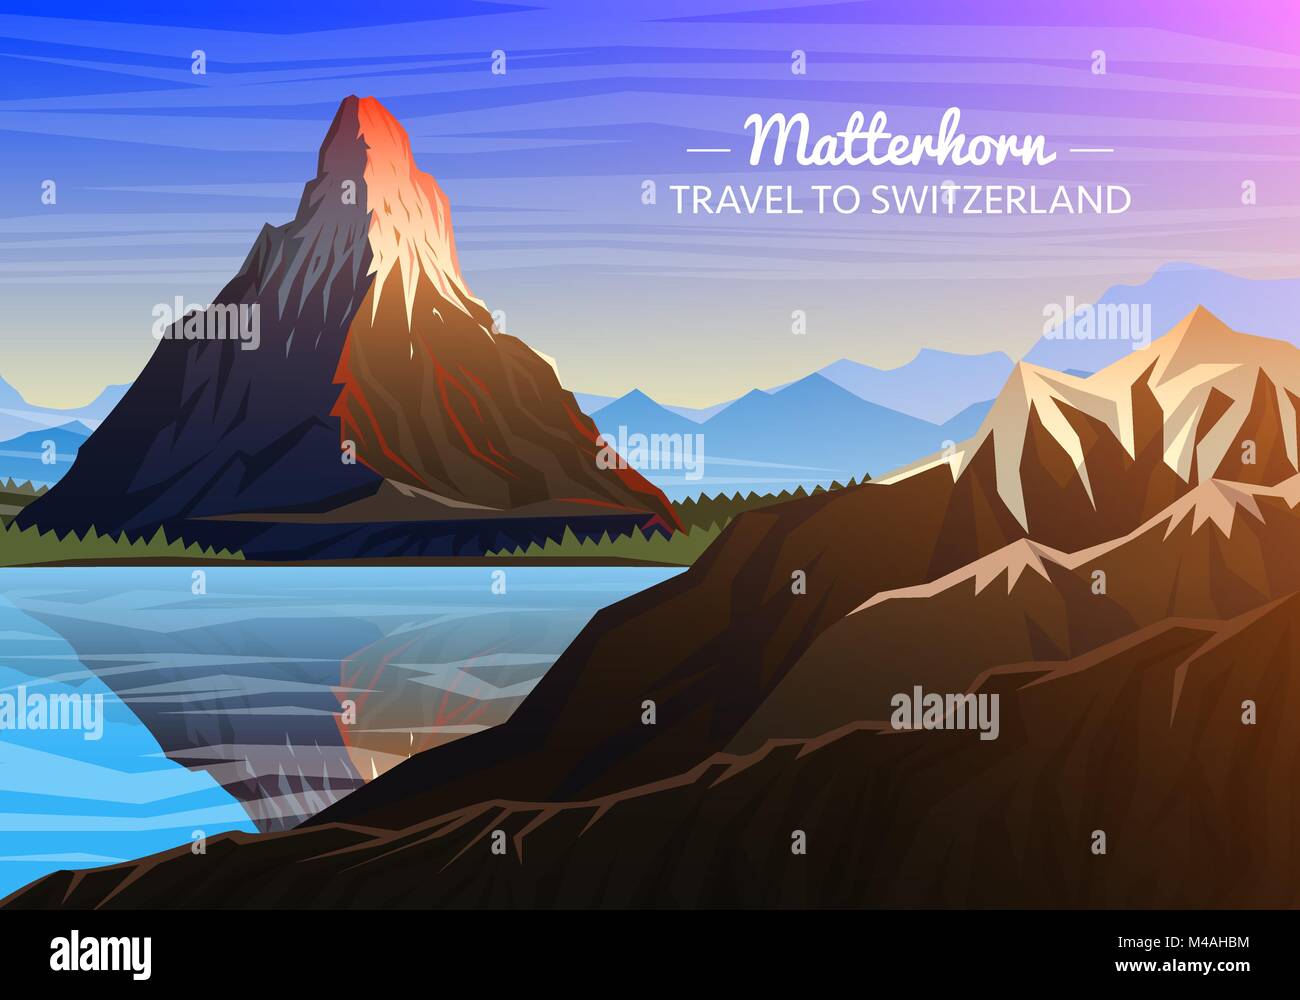 Berge Matterhorn, abendliche Panorama von Peaks mit Wasserfall, Landschaft in einem frühen Tageslicht. Reisen oder Camping, Klettern. Outdoor Bergkuppen, Zermatt, Schweiz, Wallis. Stock Vektor